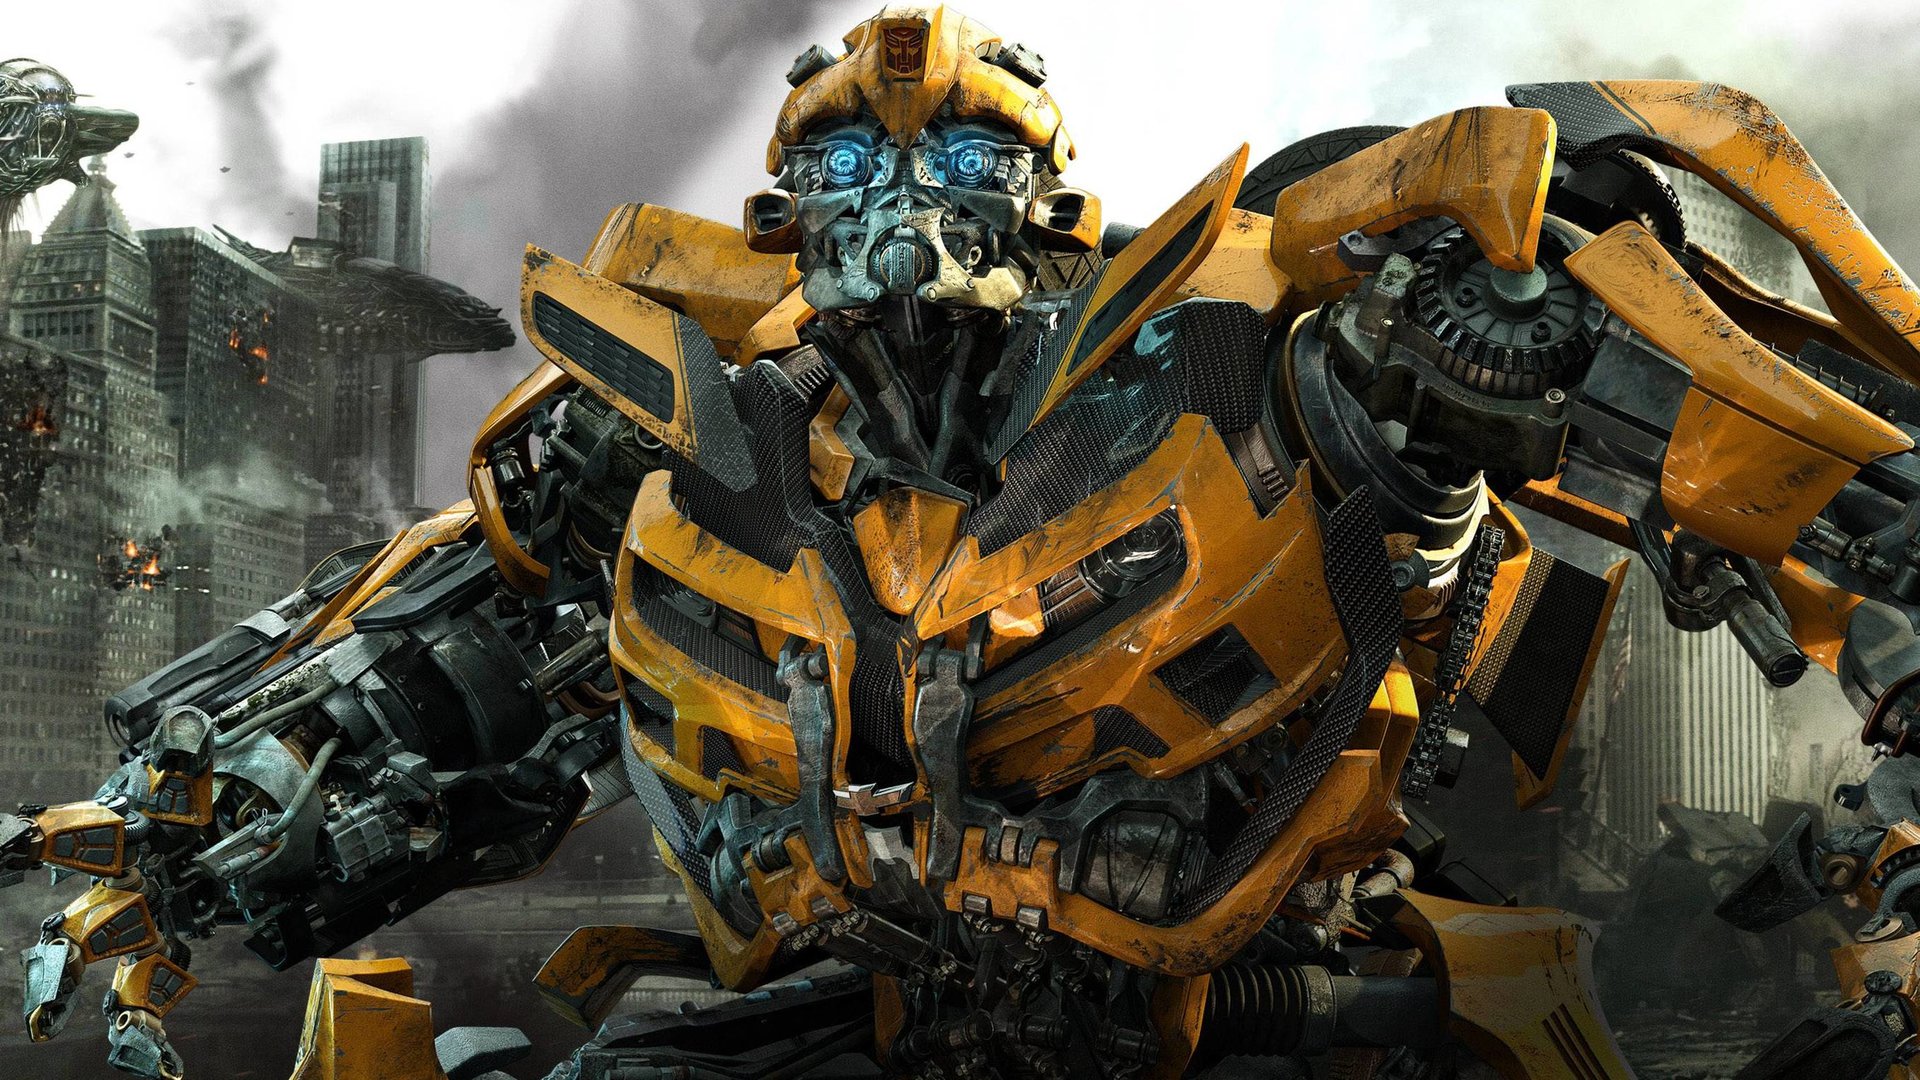 #„Transformers“-Reihenfolge: Alle Filme nach Veröffentlichung und Timeline